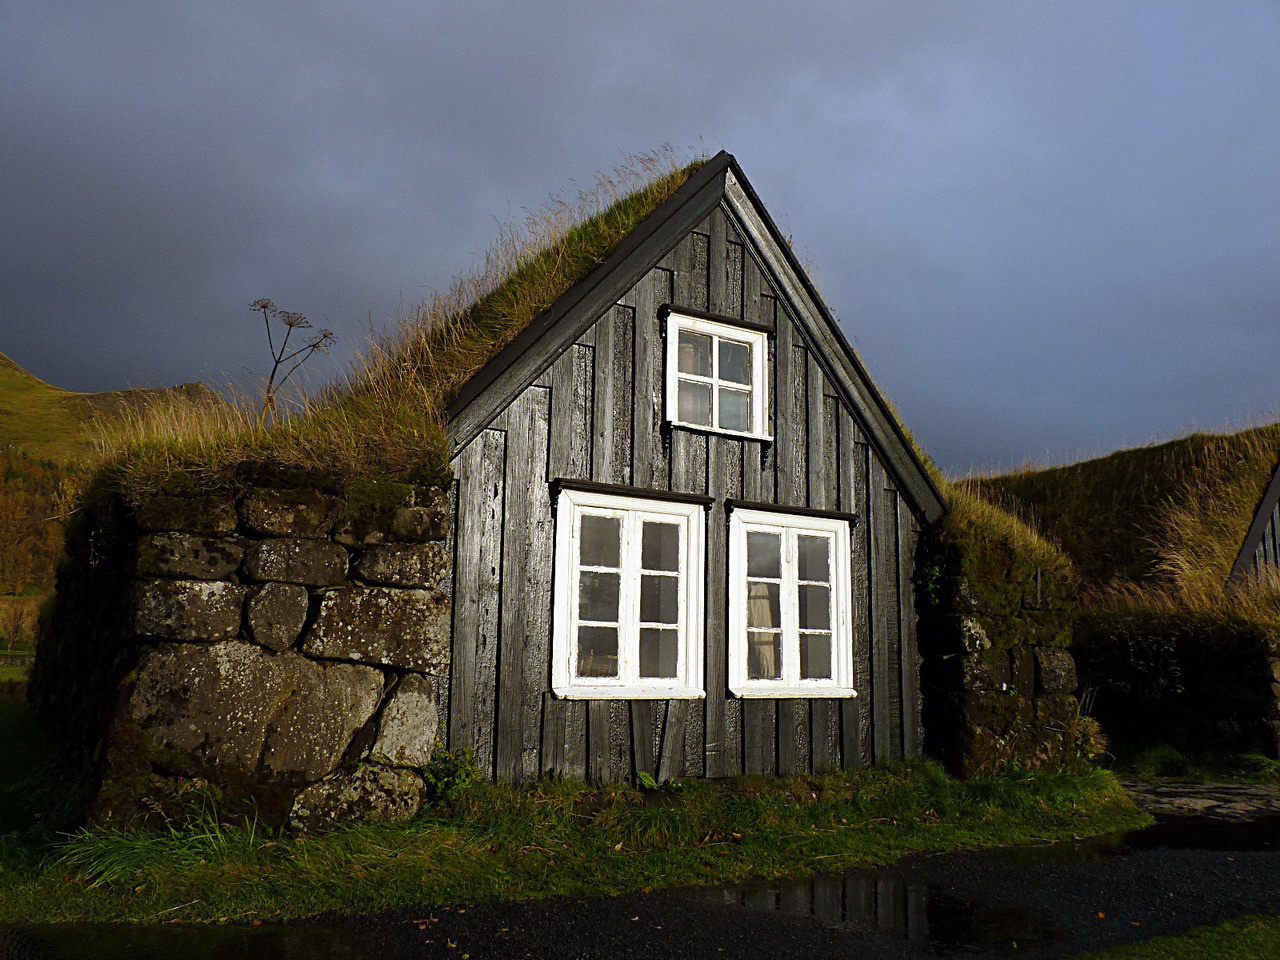 Azok a régi szép idők… Skógarban egy színvonalas néprajzi múzeumban feledkezhetünk bele az izlandiak múltjába. Találunk ott templomot, iskolát, lakóházakat, és egy gazdag tárgyi gyűjteményt. Mint fotónk is mutatja, a házakat sokszor félig a földbe mélyítették, vastag falakkal övezték, tetejükre hőszigetelő növényréteget telepítettek, hogy a hidegek és az erős szelek ellen minél jobban védekezhessenek